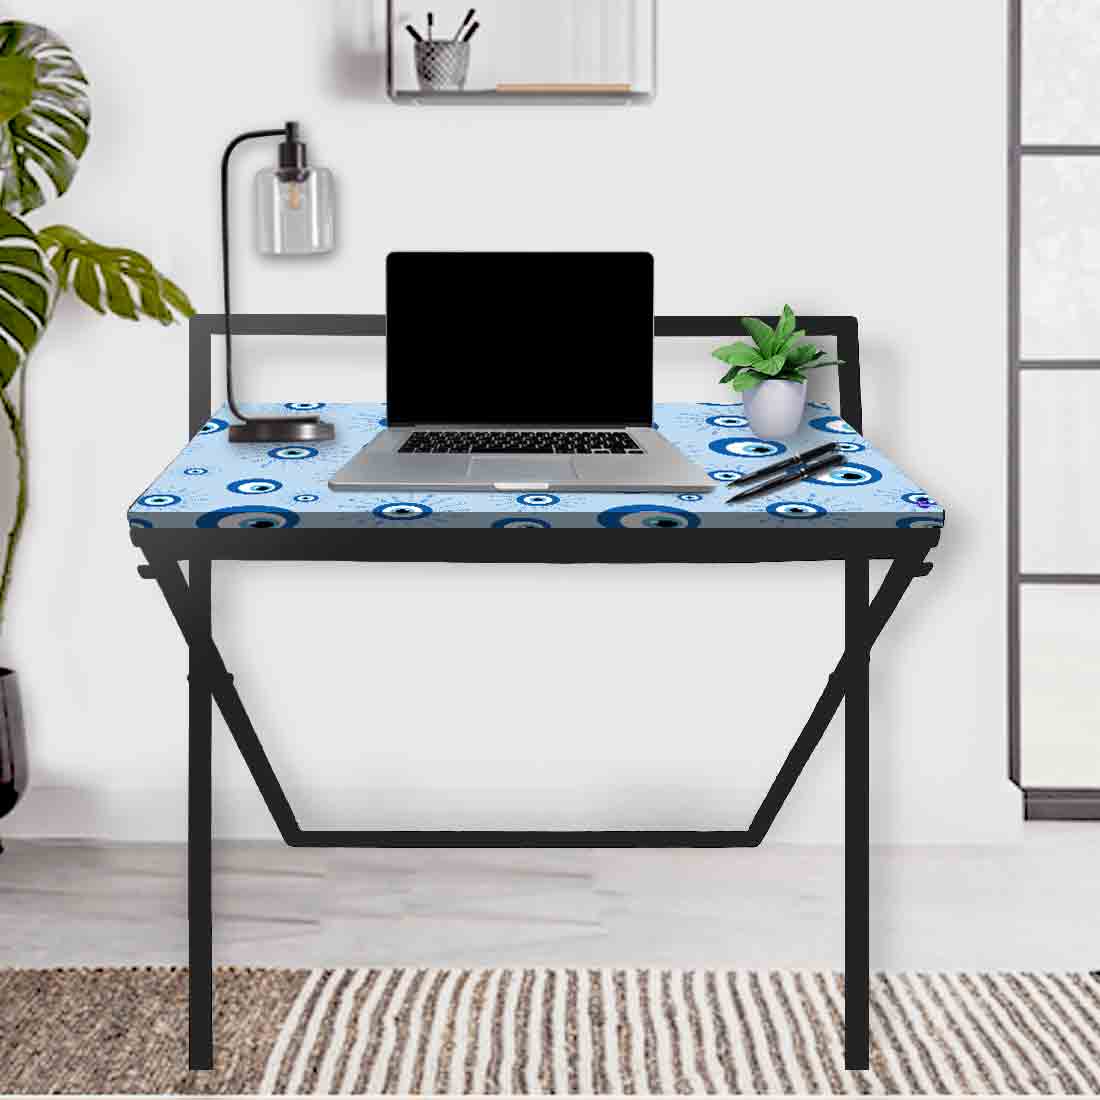 Designer Folding Study Table for Laptop Computer Desk -  Evil Eye Protector Nutcase